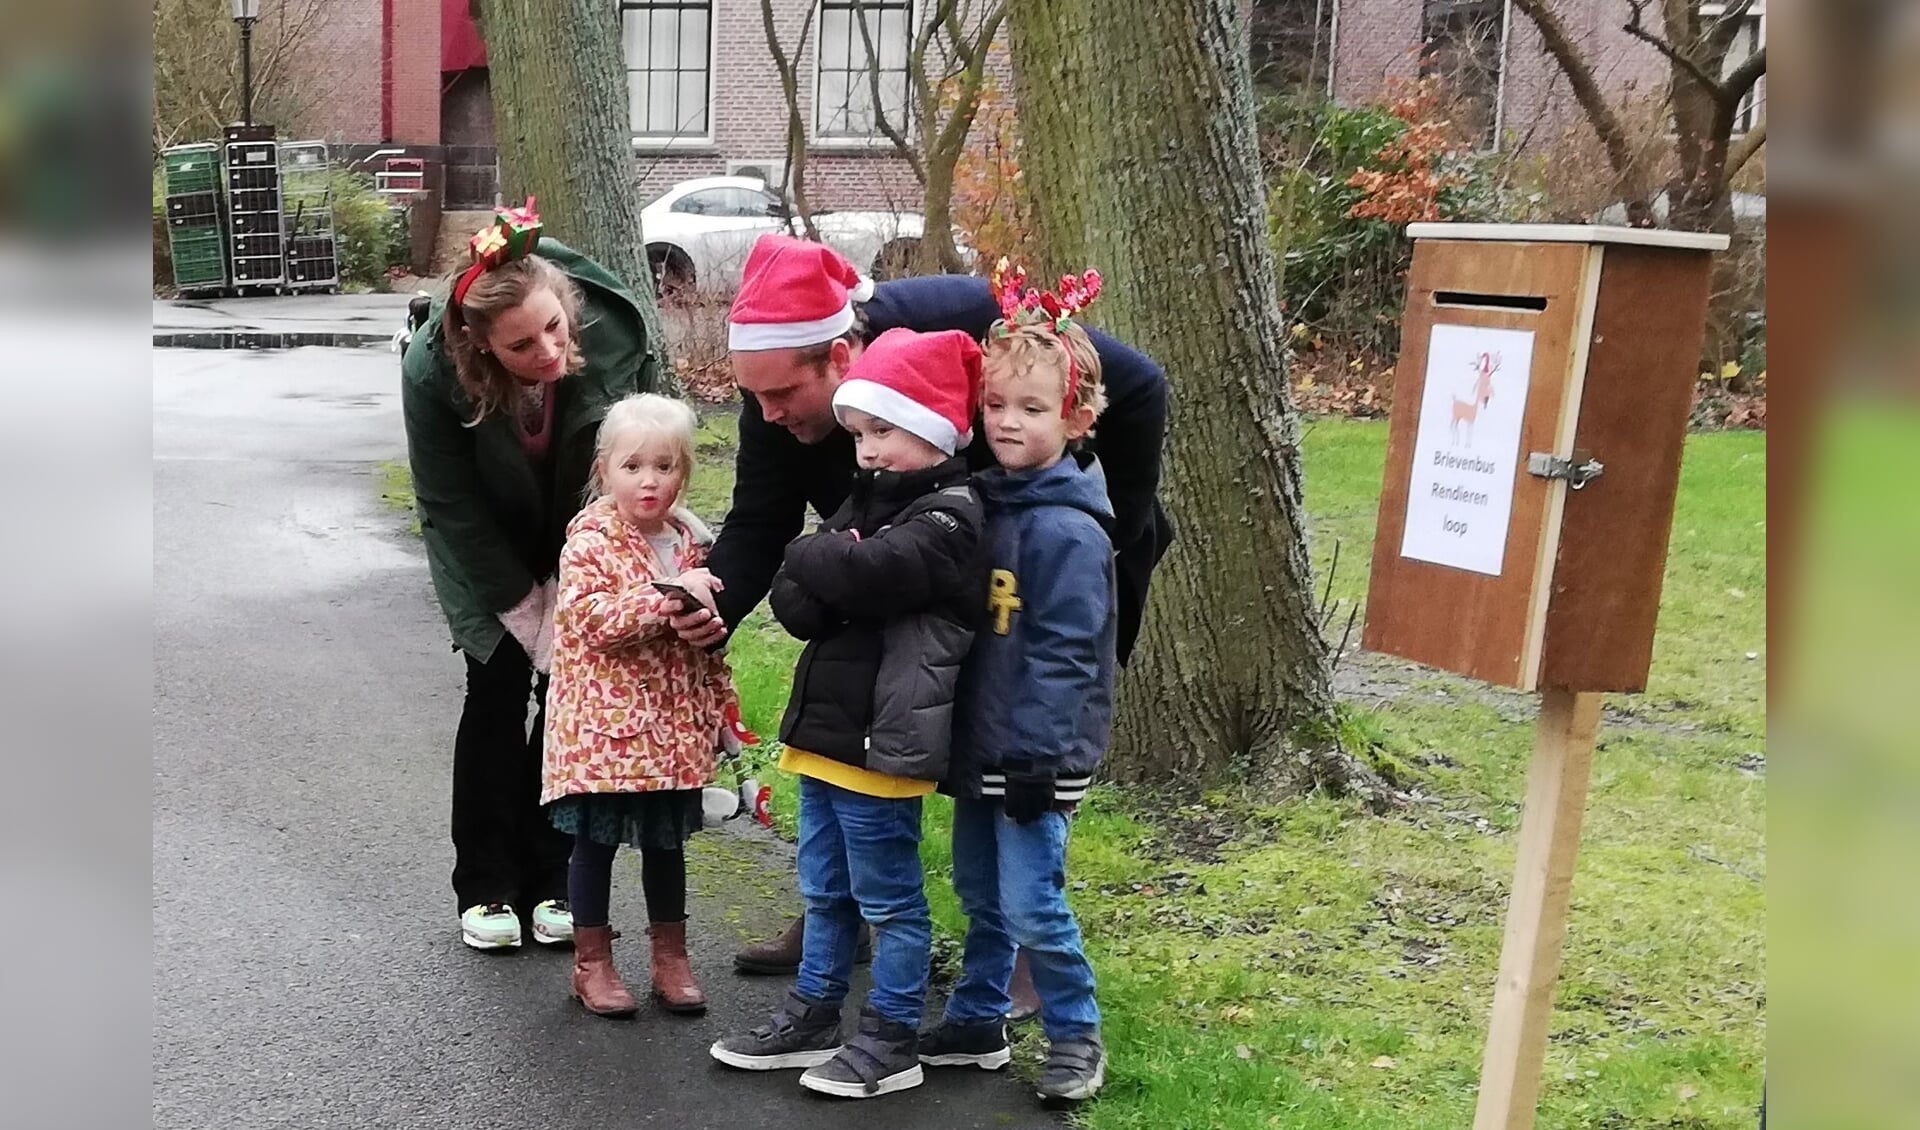 Uitgedost met rode kerstmutsen of een diadeem met het gewei van een rendier zorgden de deelnemers voor een vrolijk tintje in deze donkere tijd. Foto: Rendierenloop.nl